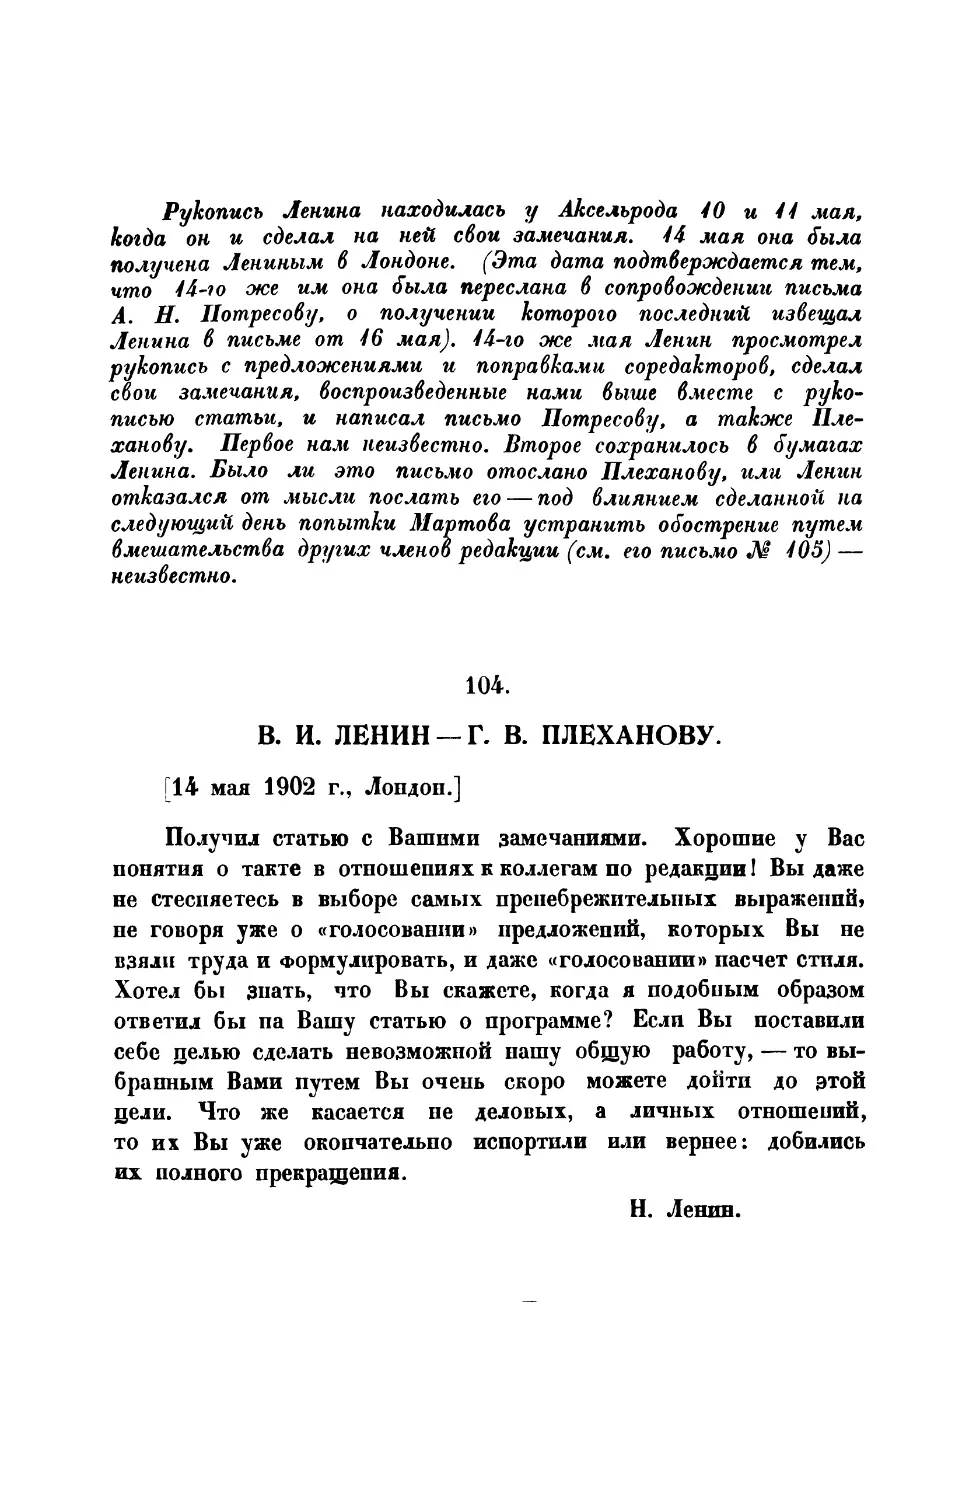 104. В. И. Ленин. — Письмо Г. В. Плеханову от 14 V 1902 г.